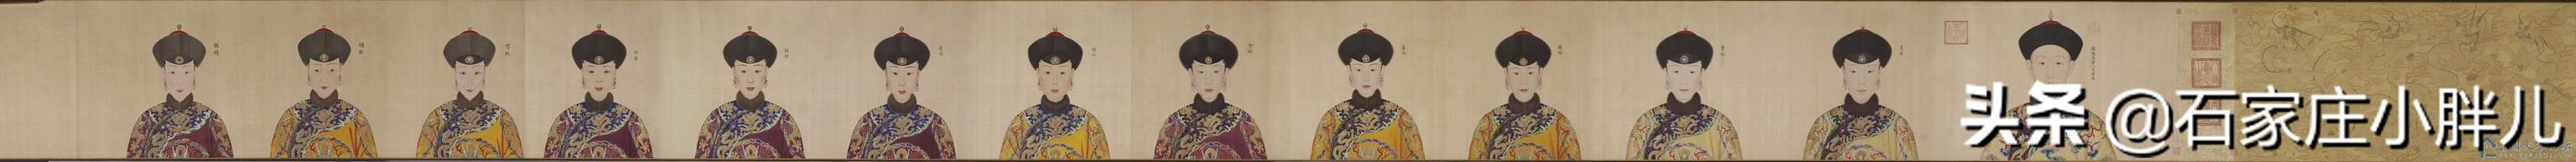 郎世宁所画的乾隆帝12名妃嫔的画像，哪个好看你说了算